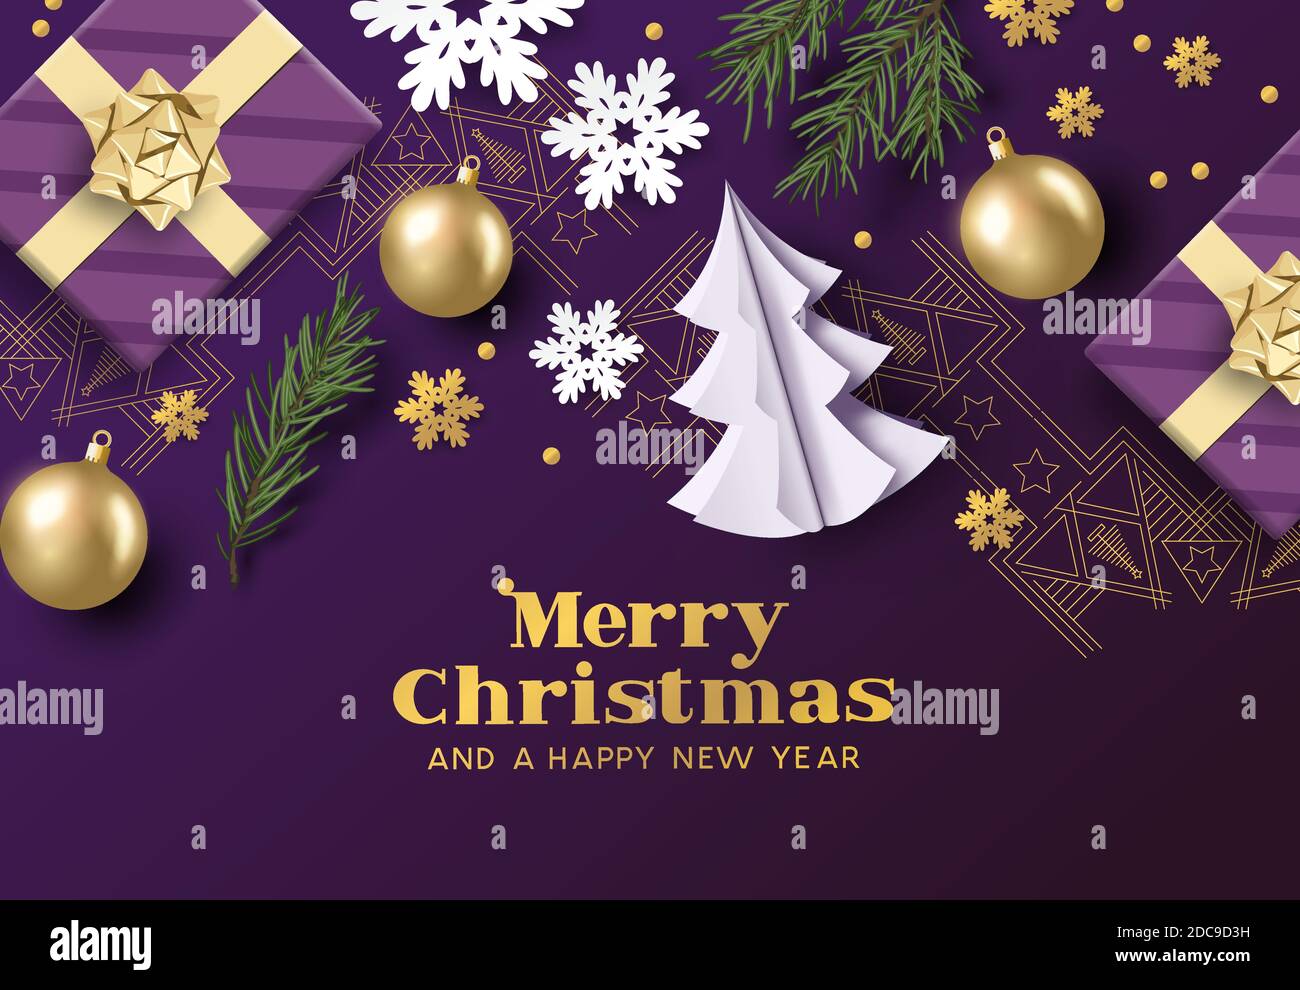 Fröhliche weihnachten Layout Komposition mit lila und goldenen Farben, weihnachtsdekorationen und Tannenzweigen. Vektorgrafik Stock Vektor